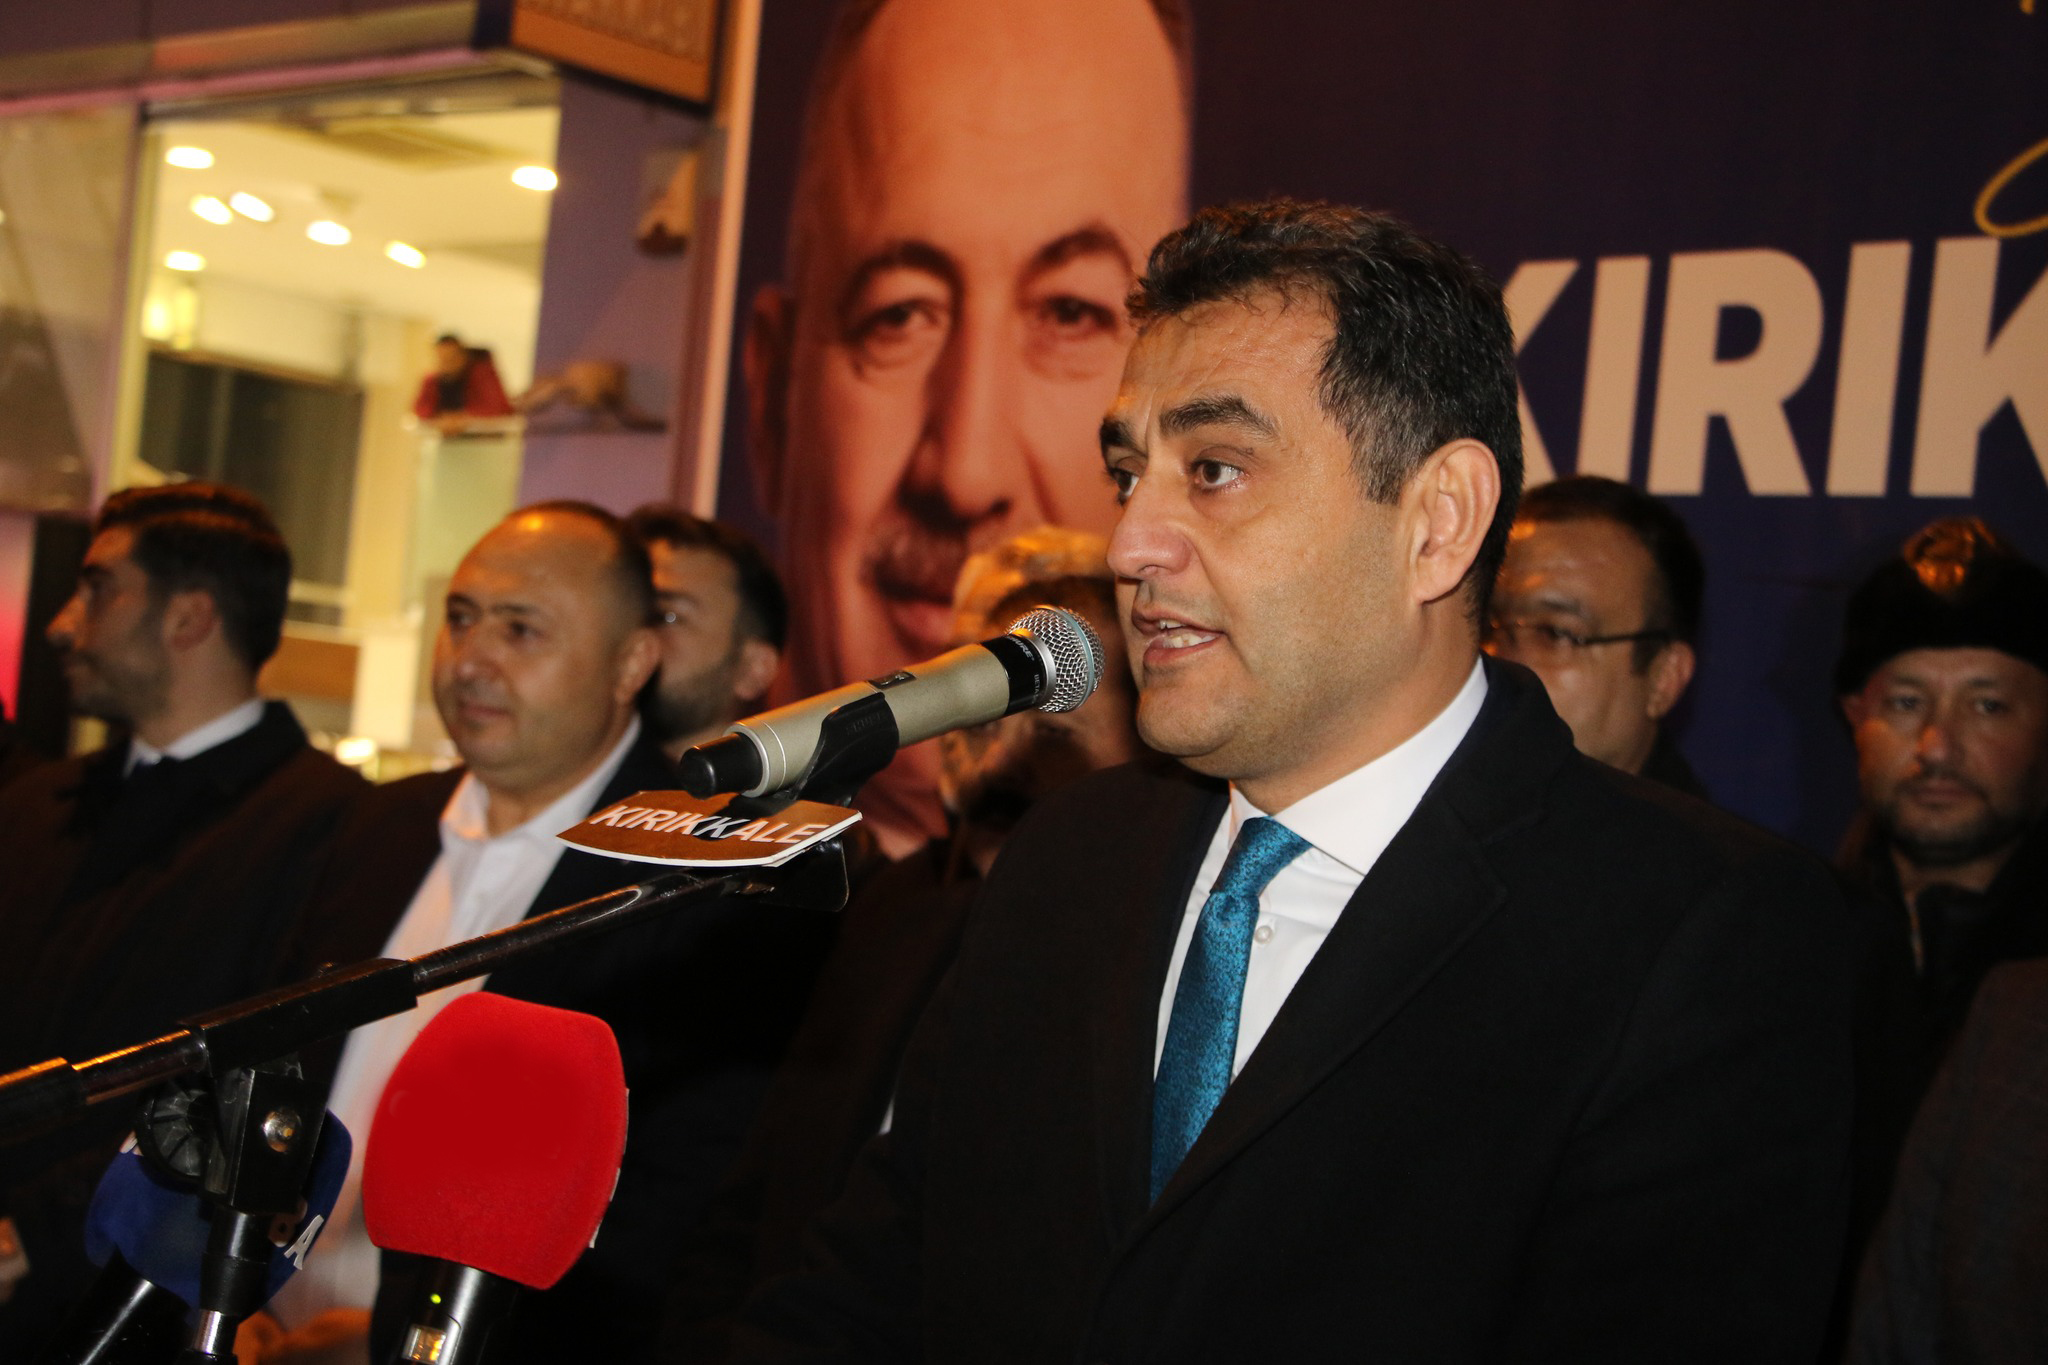 mehmet-saygili-ak-parti-kirikkale-belediye-baskan-adayi-karsilama-6-1 AK Parti Kırıkkale Belediye Başkanı Mehmet Saygılı'ya Coşkulu Karşılama